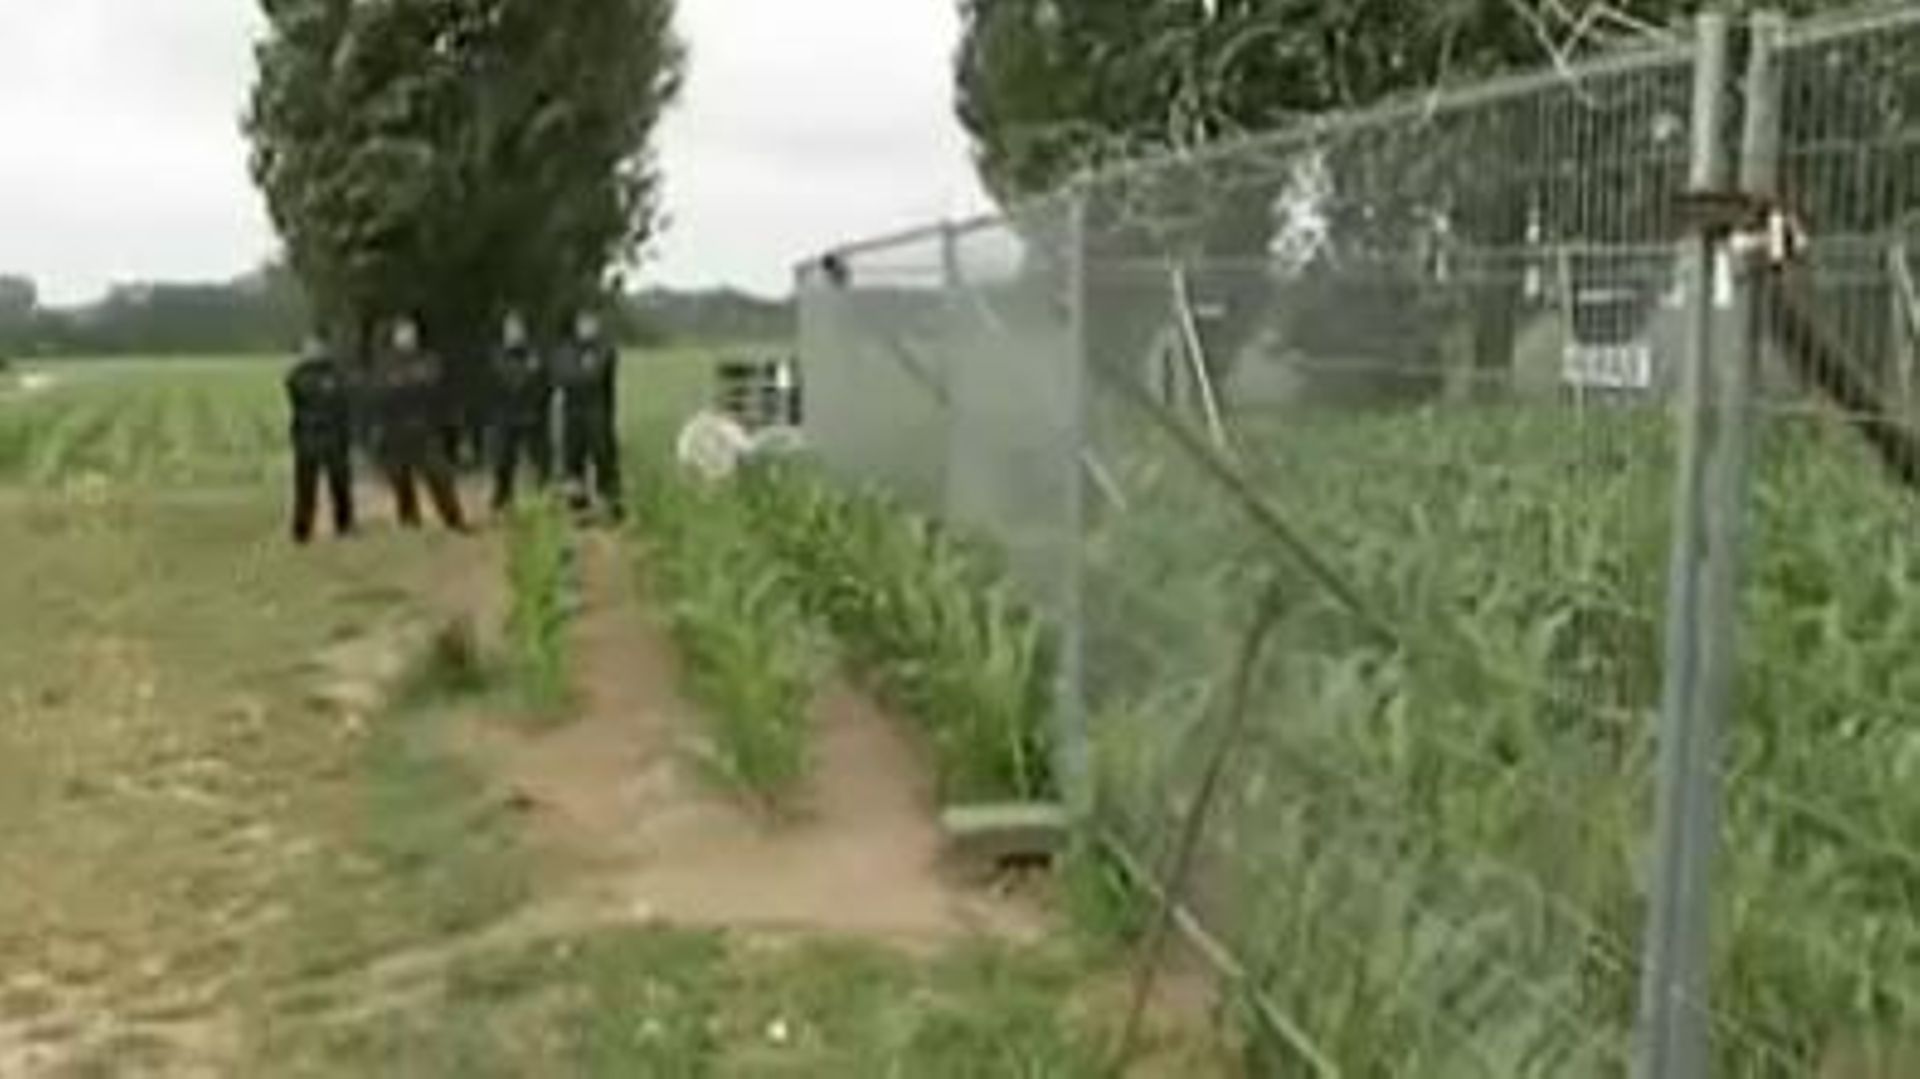 Les activistes étaient parvenus à briser le cordon de sécurité pour ensuite pénétrer sur le champ OGM.